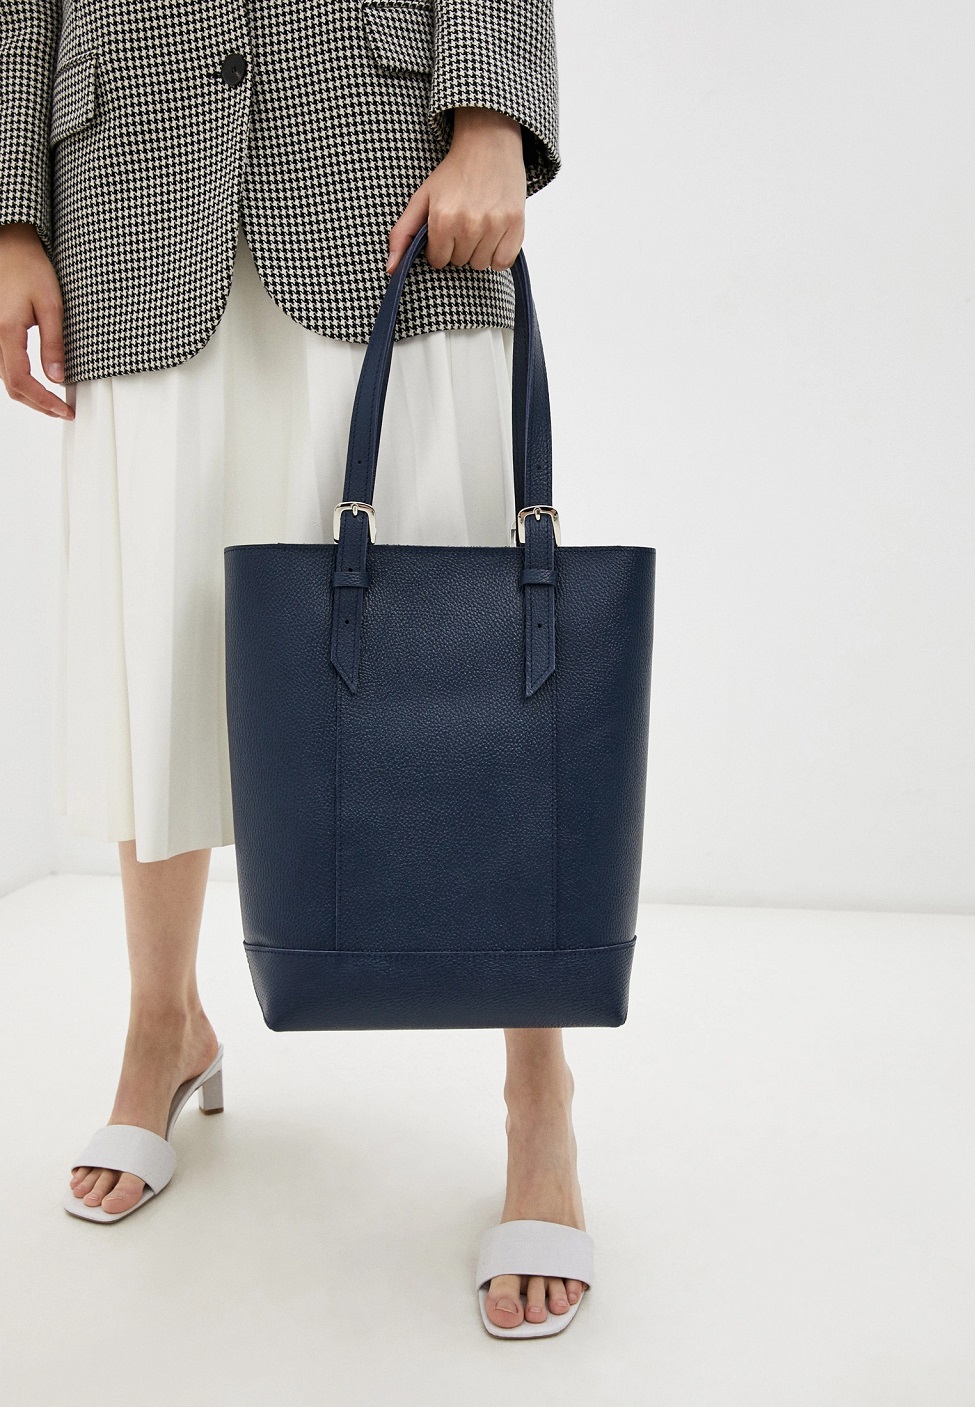 Женская сумка-шоппер из натуральной кожи синяя A014 sapphire grain ZIPPER